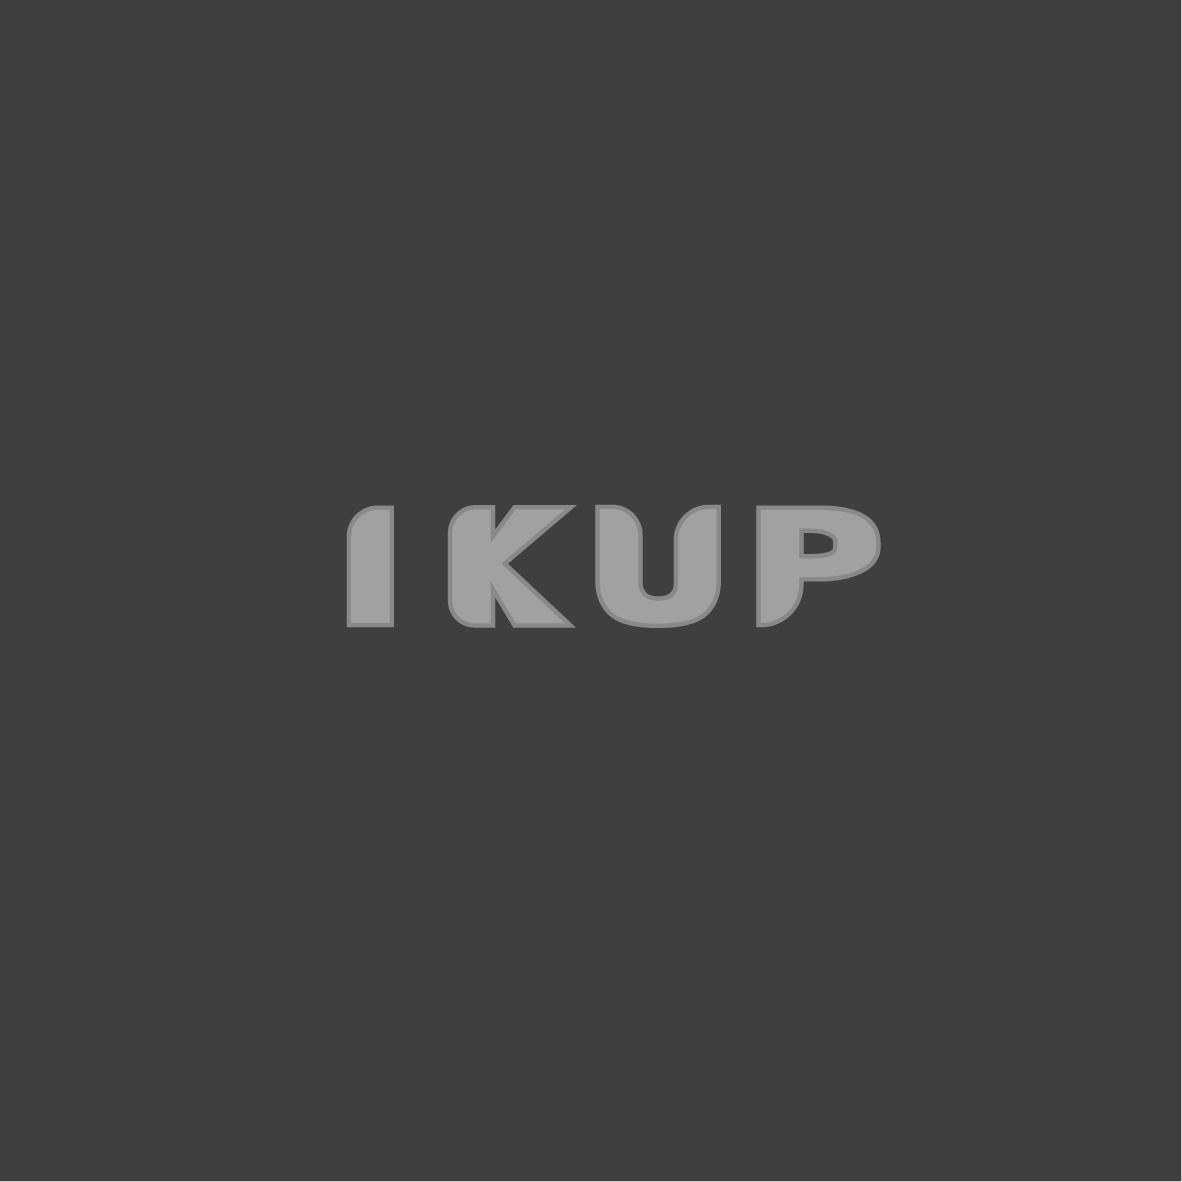 转让商标-IKUP